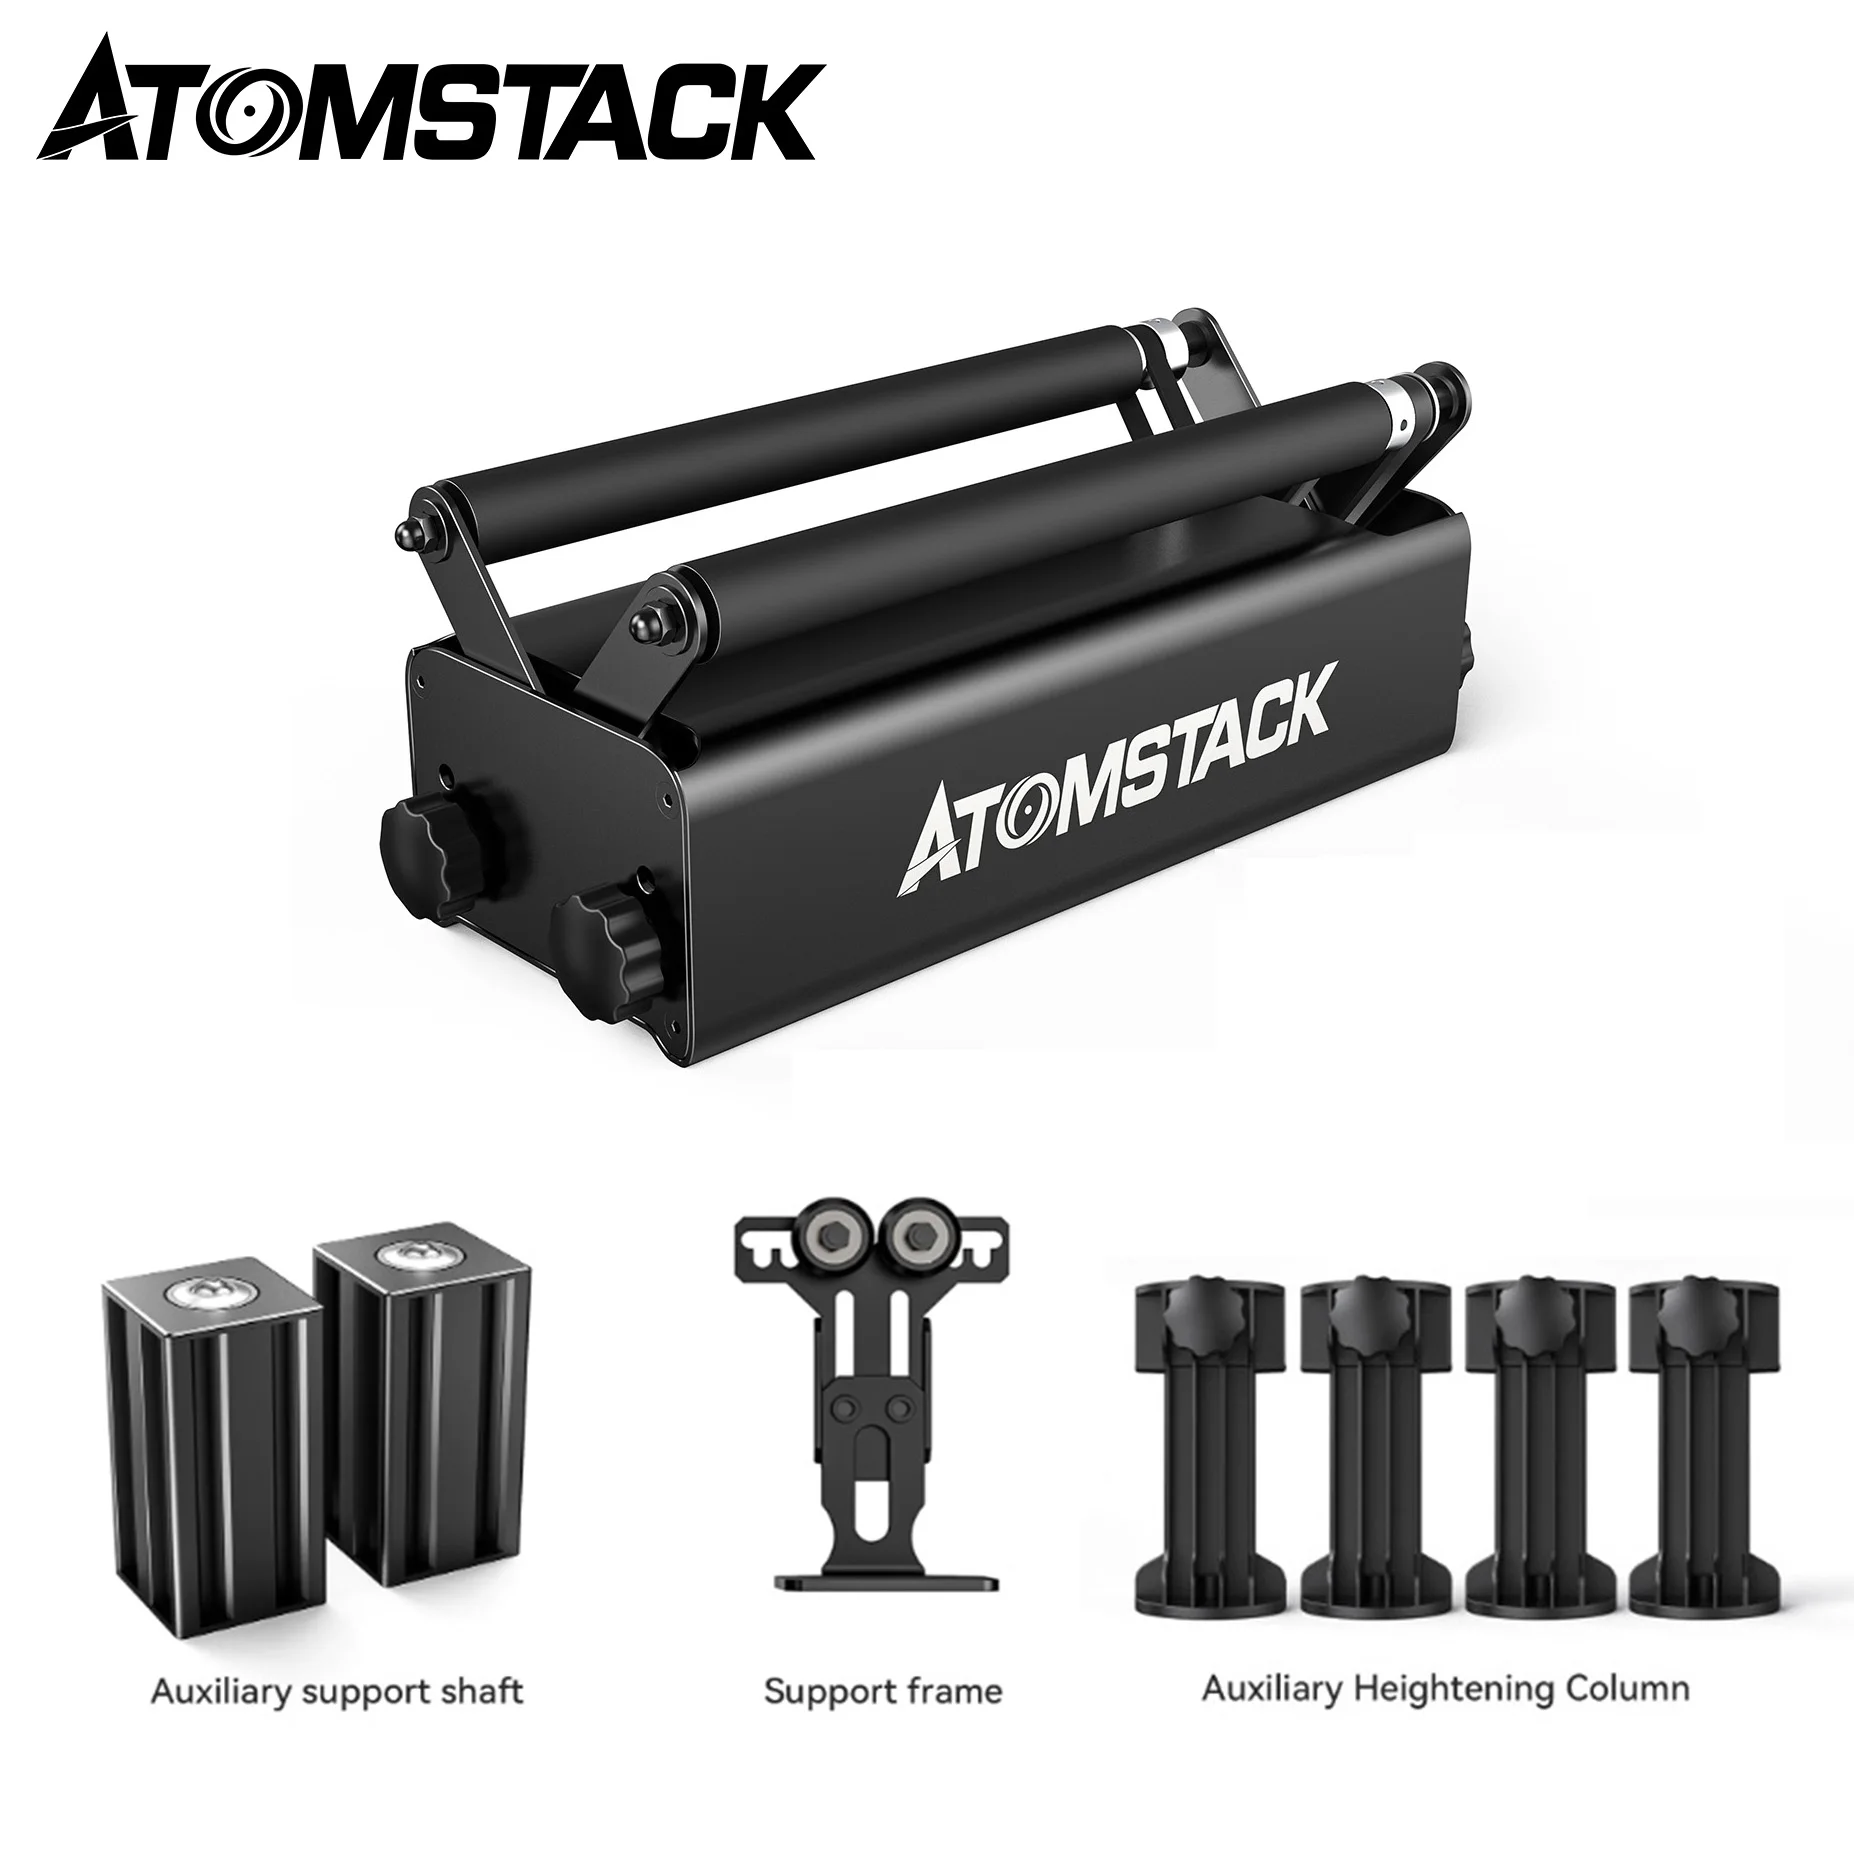 ATOMSTACK-Rodillo rotativo R3 PRO, estructura de aleación de aluminio, Compatible con el 95% de las máquinas de grabado láser, Ortur, NEJE, Twotress